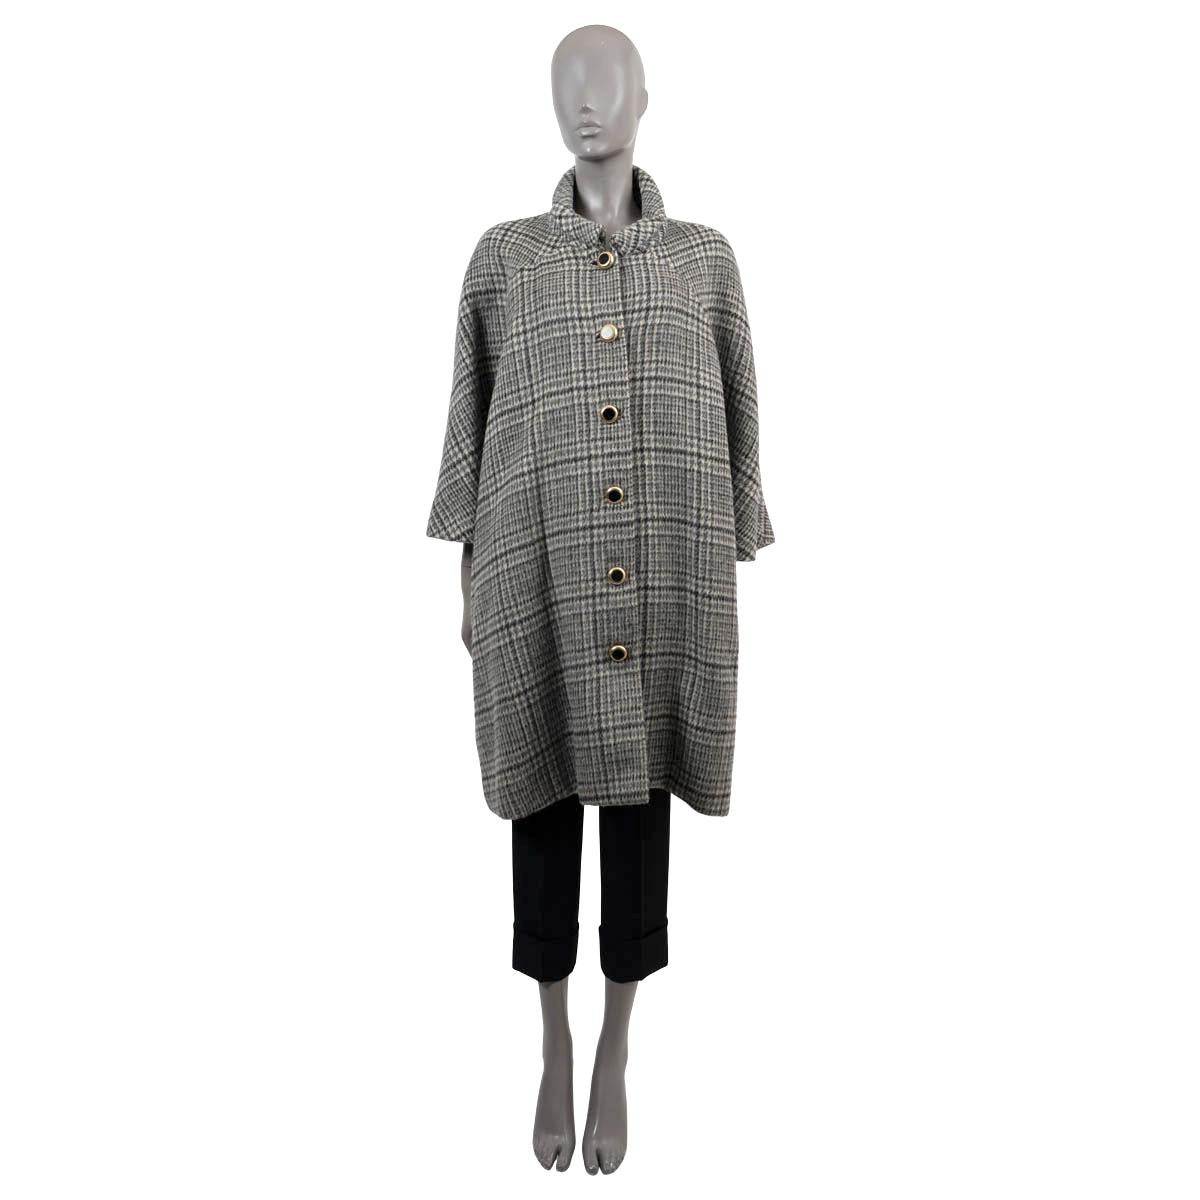 Manteau à carreaux 100% authentique de Balenciaga en laine (60%) et mohair (40%) crème, gris et noir. Comporte une silhouette surdimensionnée, deux poches fendues à la taille et des manches raglan 7/8 (mesure des manches prise à partir de